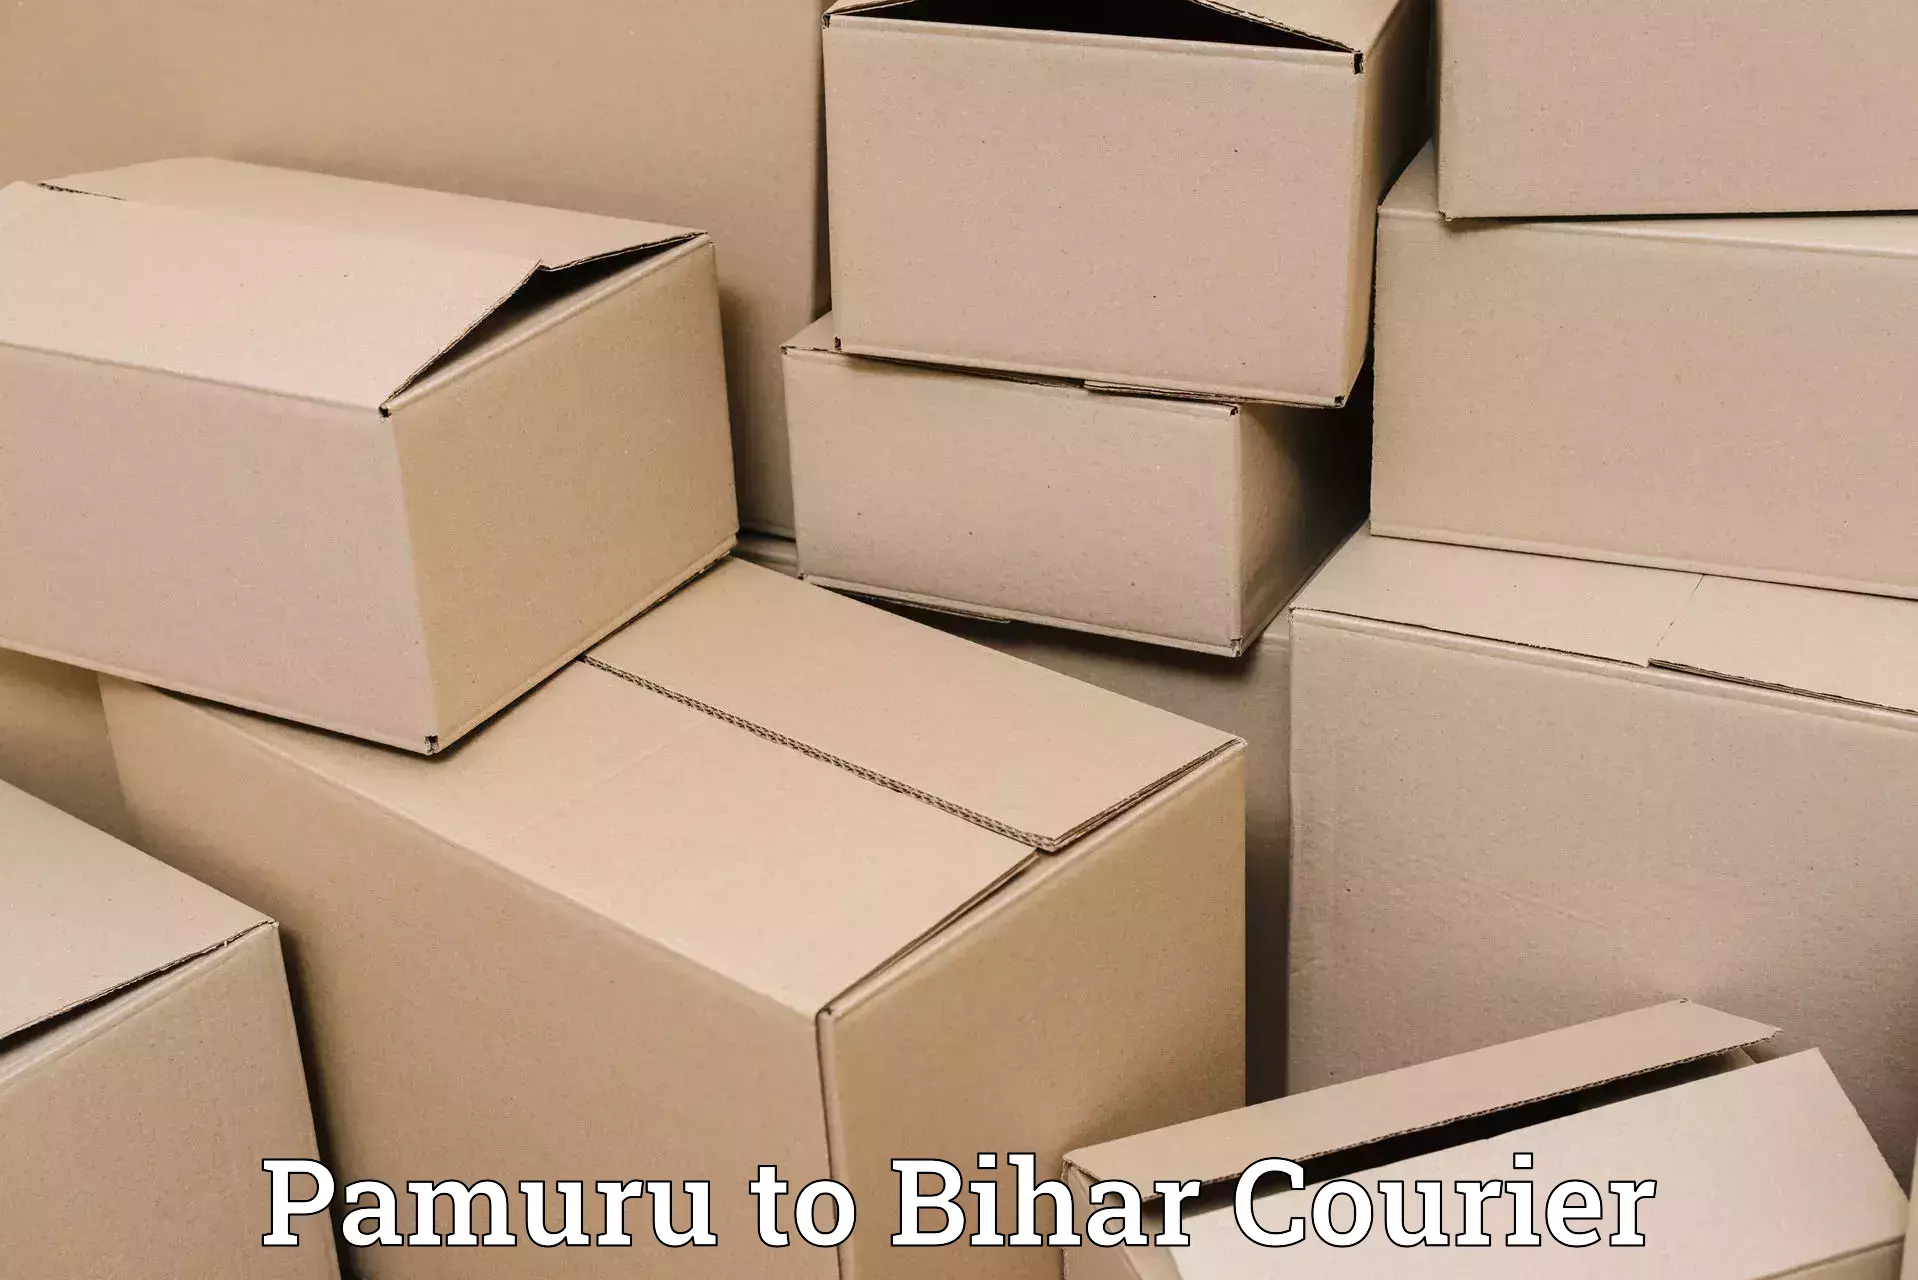 Secure shipping methods Pamuru to Patna